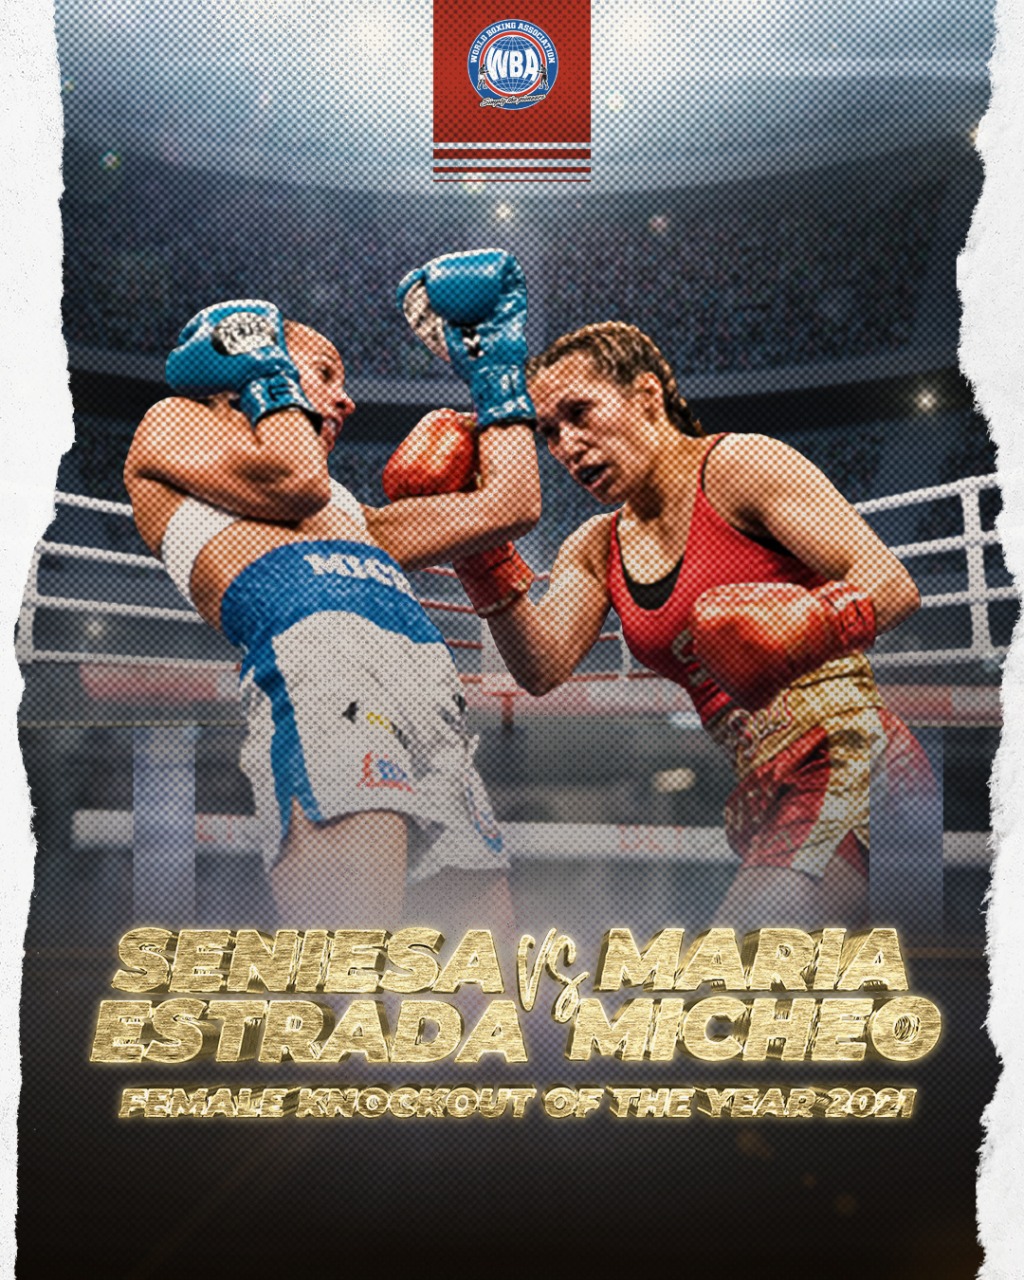 Seniesa Estrada logró el mejor nocaut de 2021 como campeona WBA